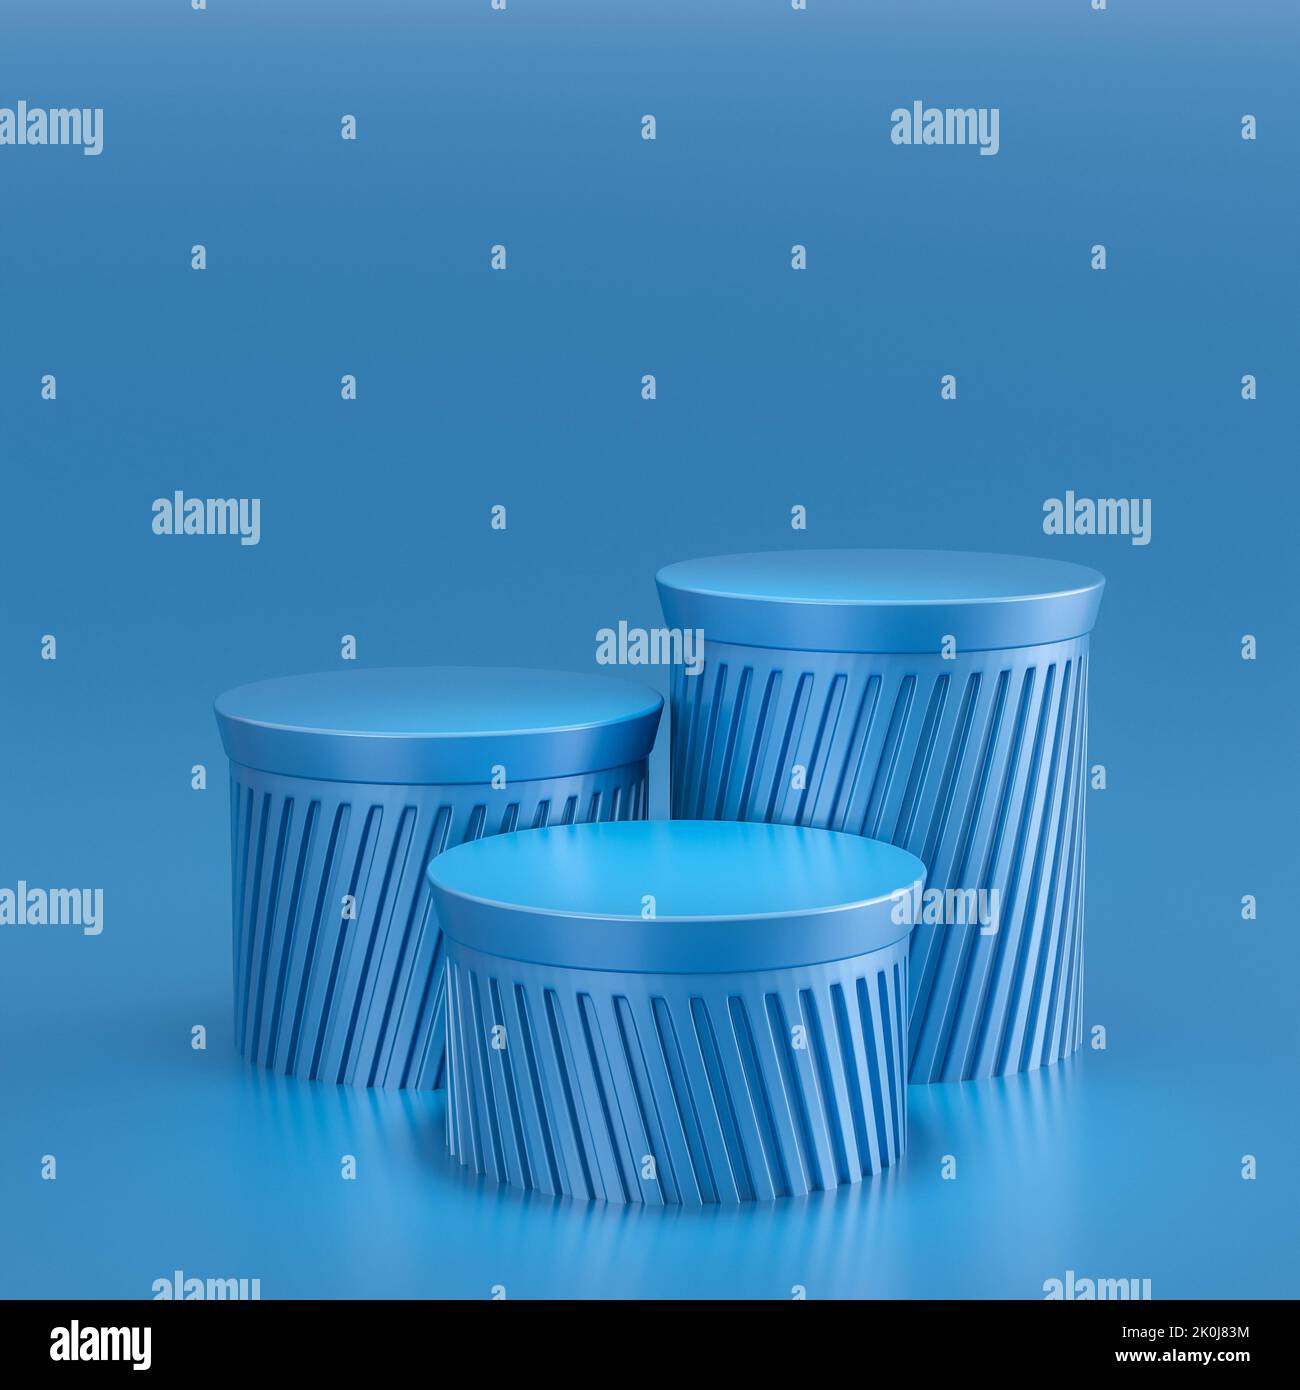 3 podios clásicos de columna en tonos azules. presentación 3d Foto de stock